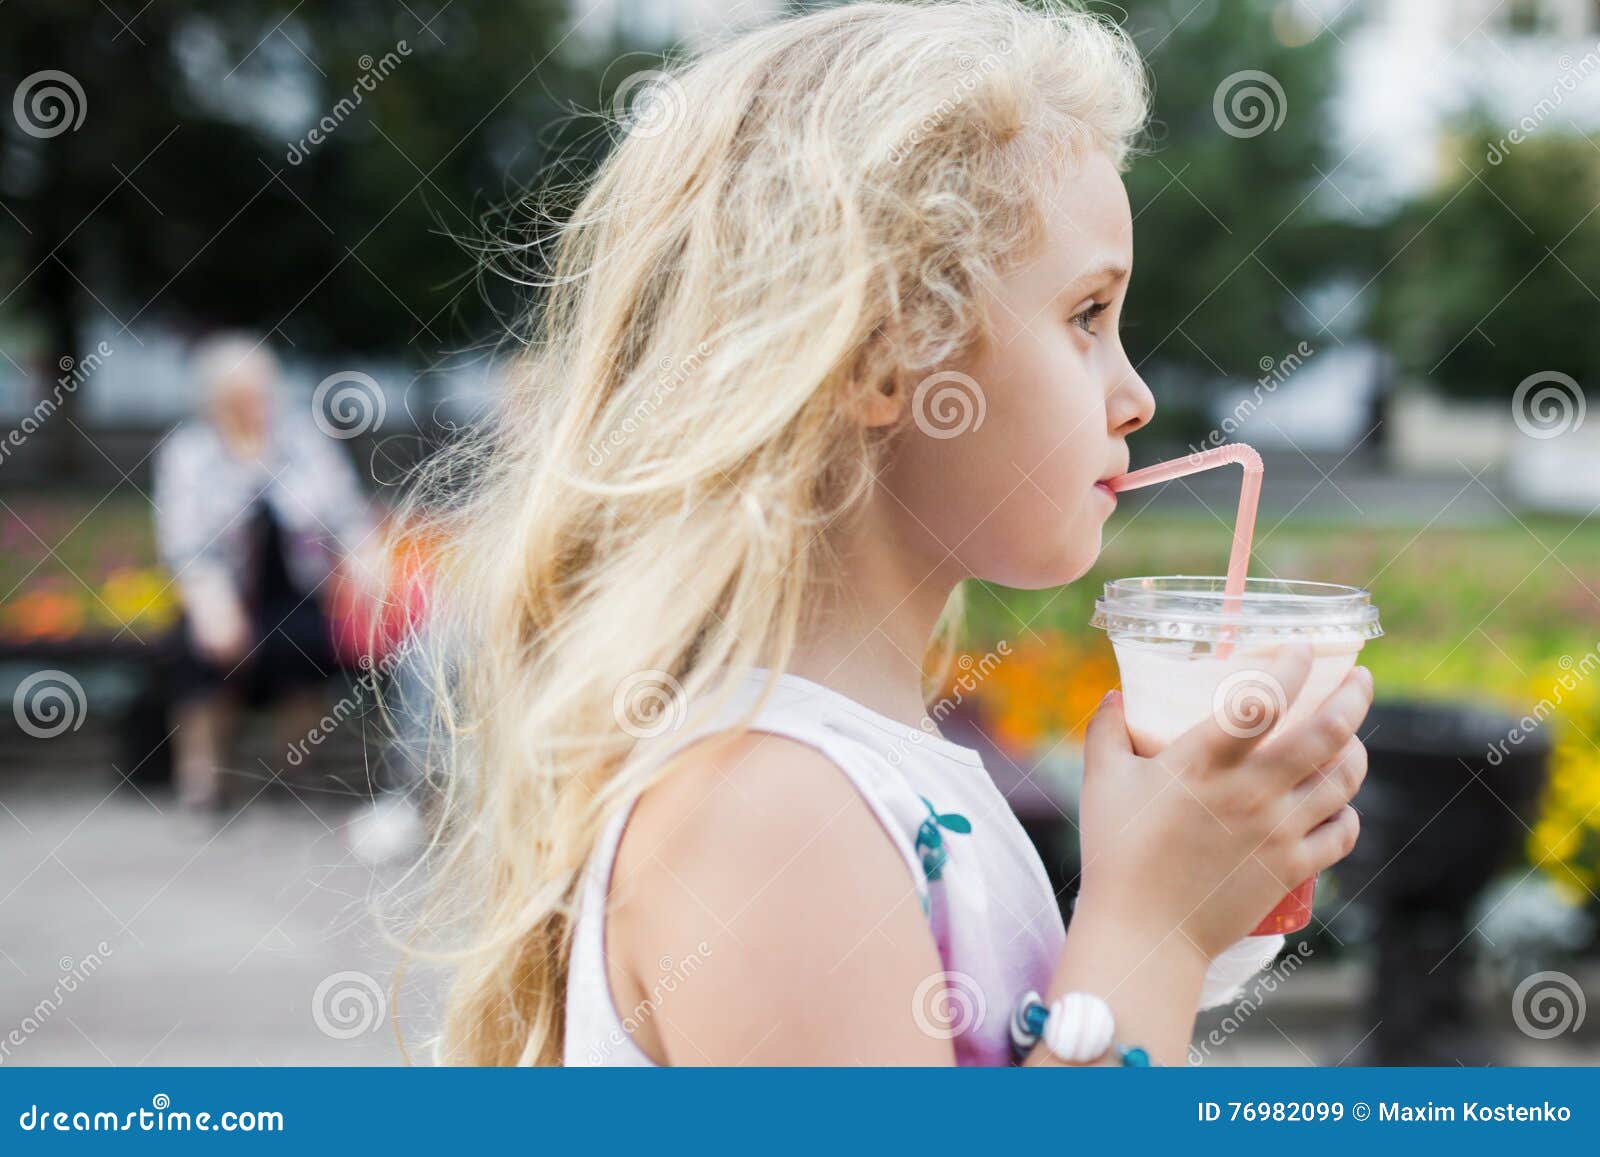 маленькая девочка пьет сперму фото 90